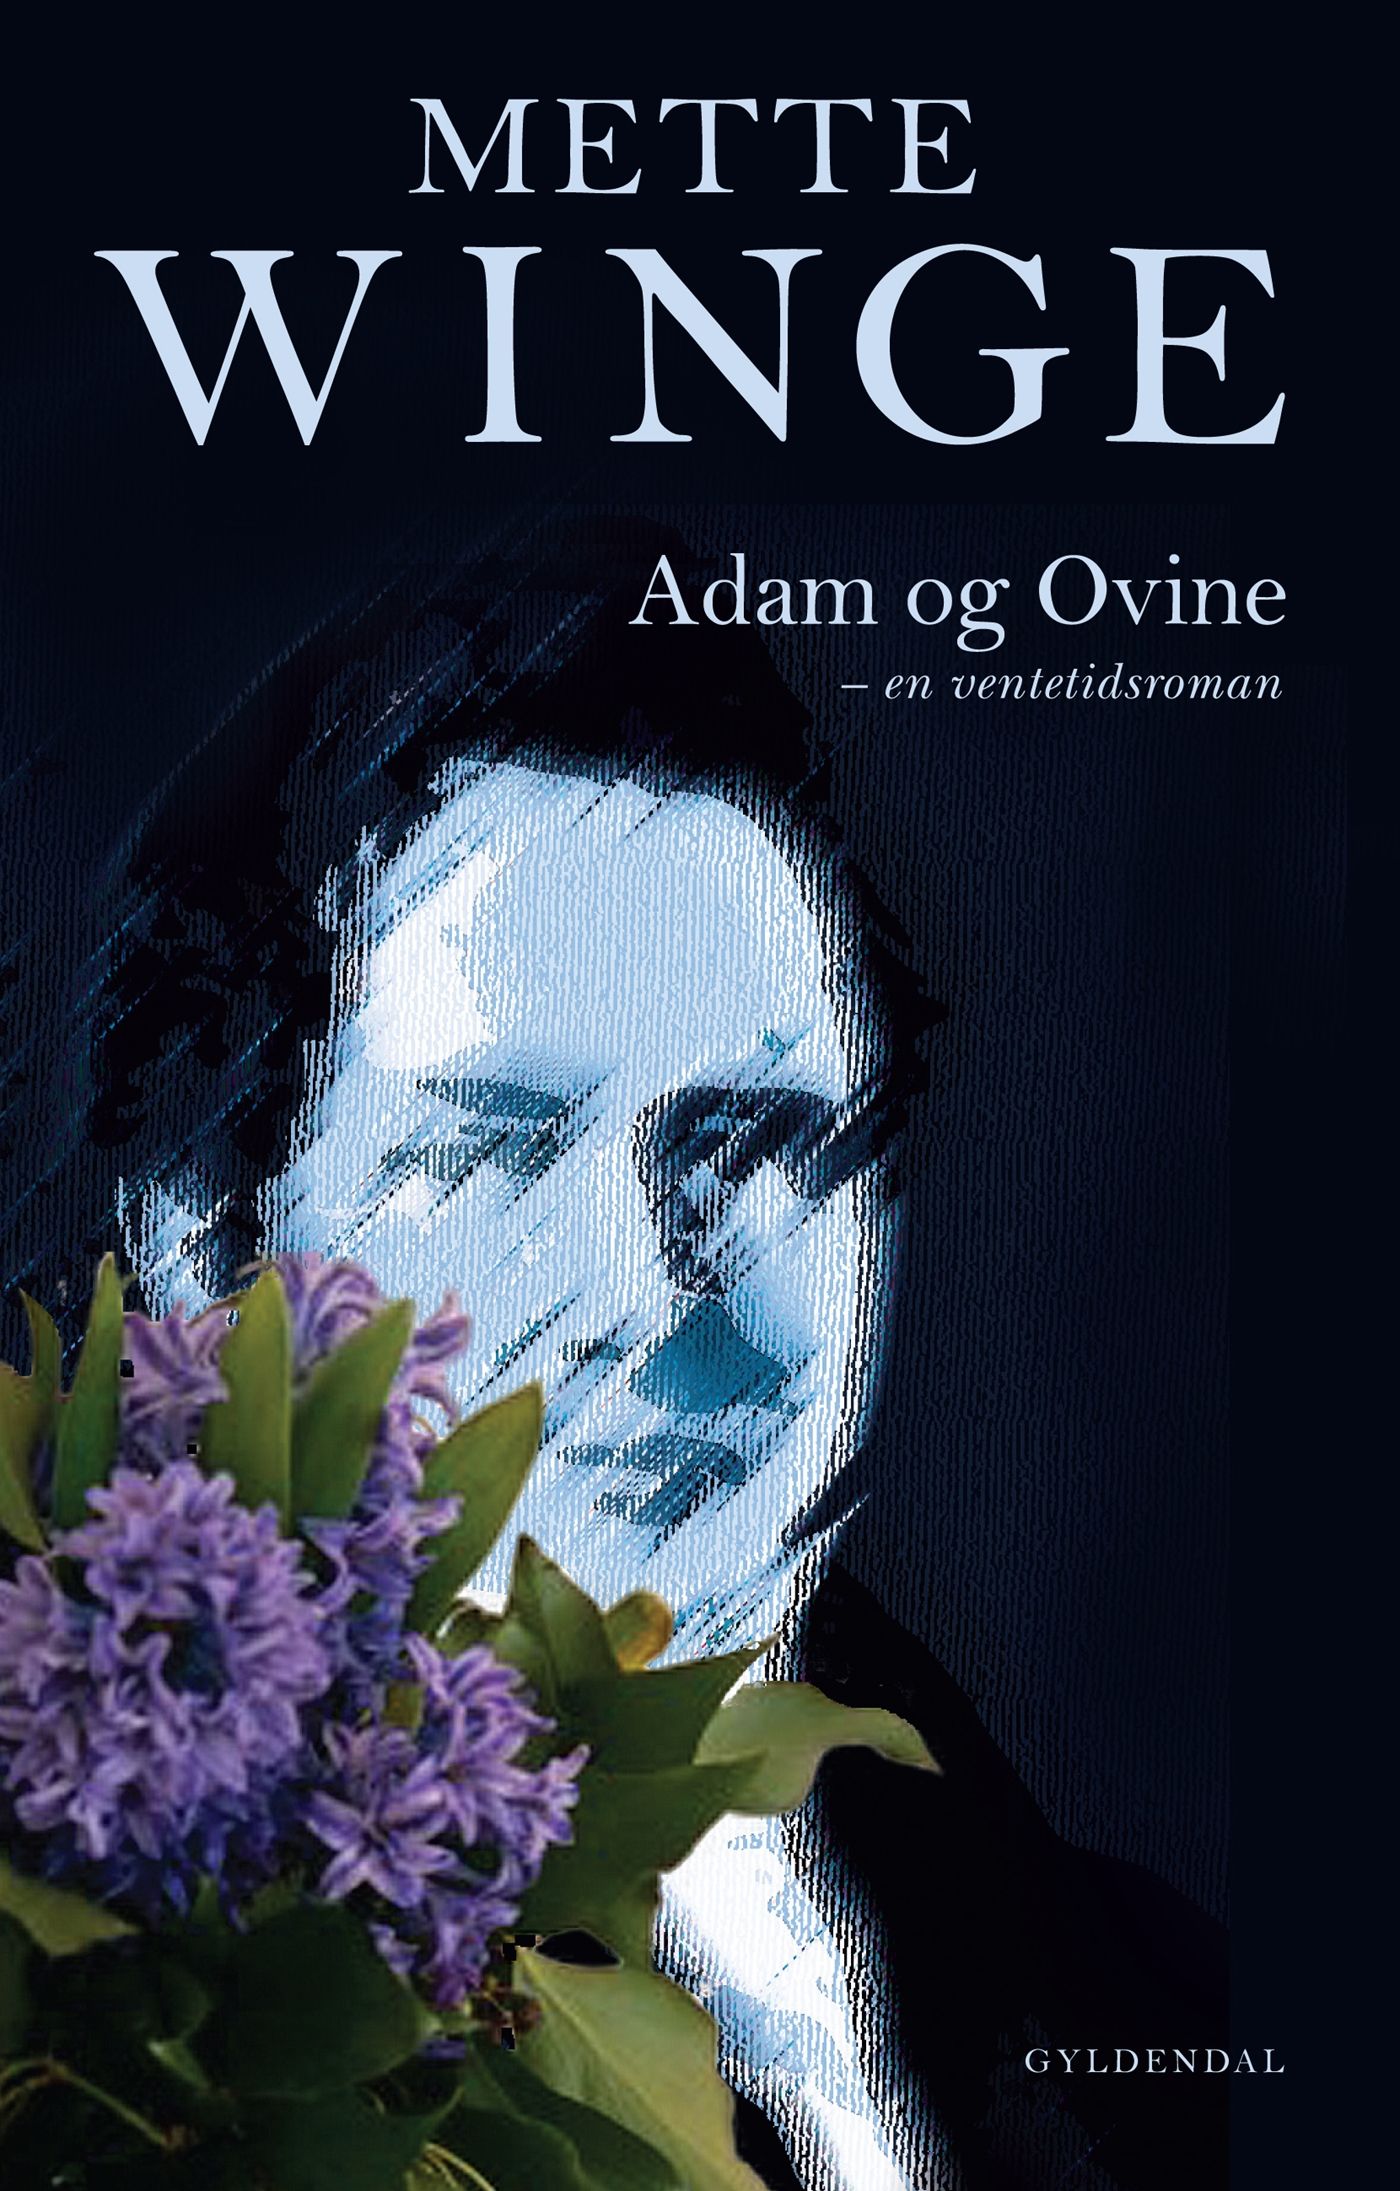 Adam og Ovine, e-bog af Mette Winge